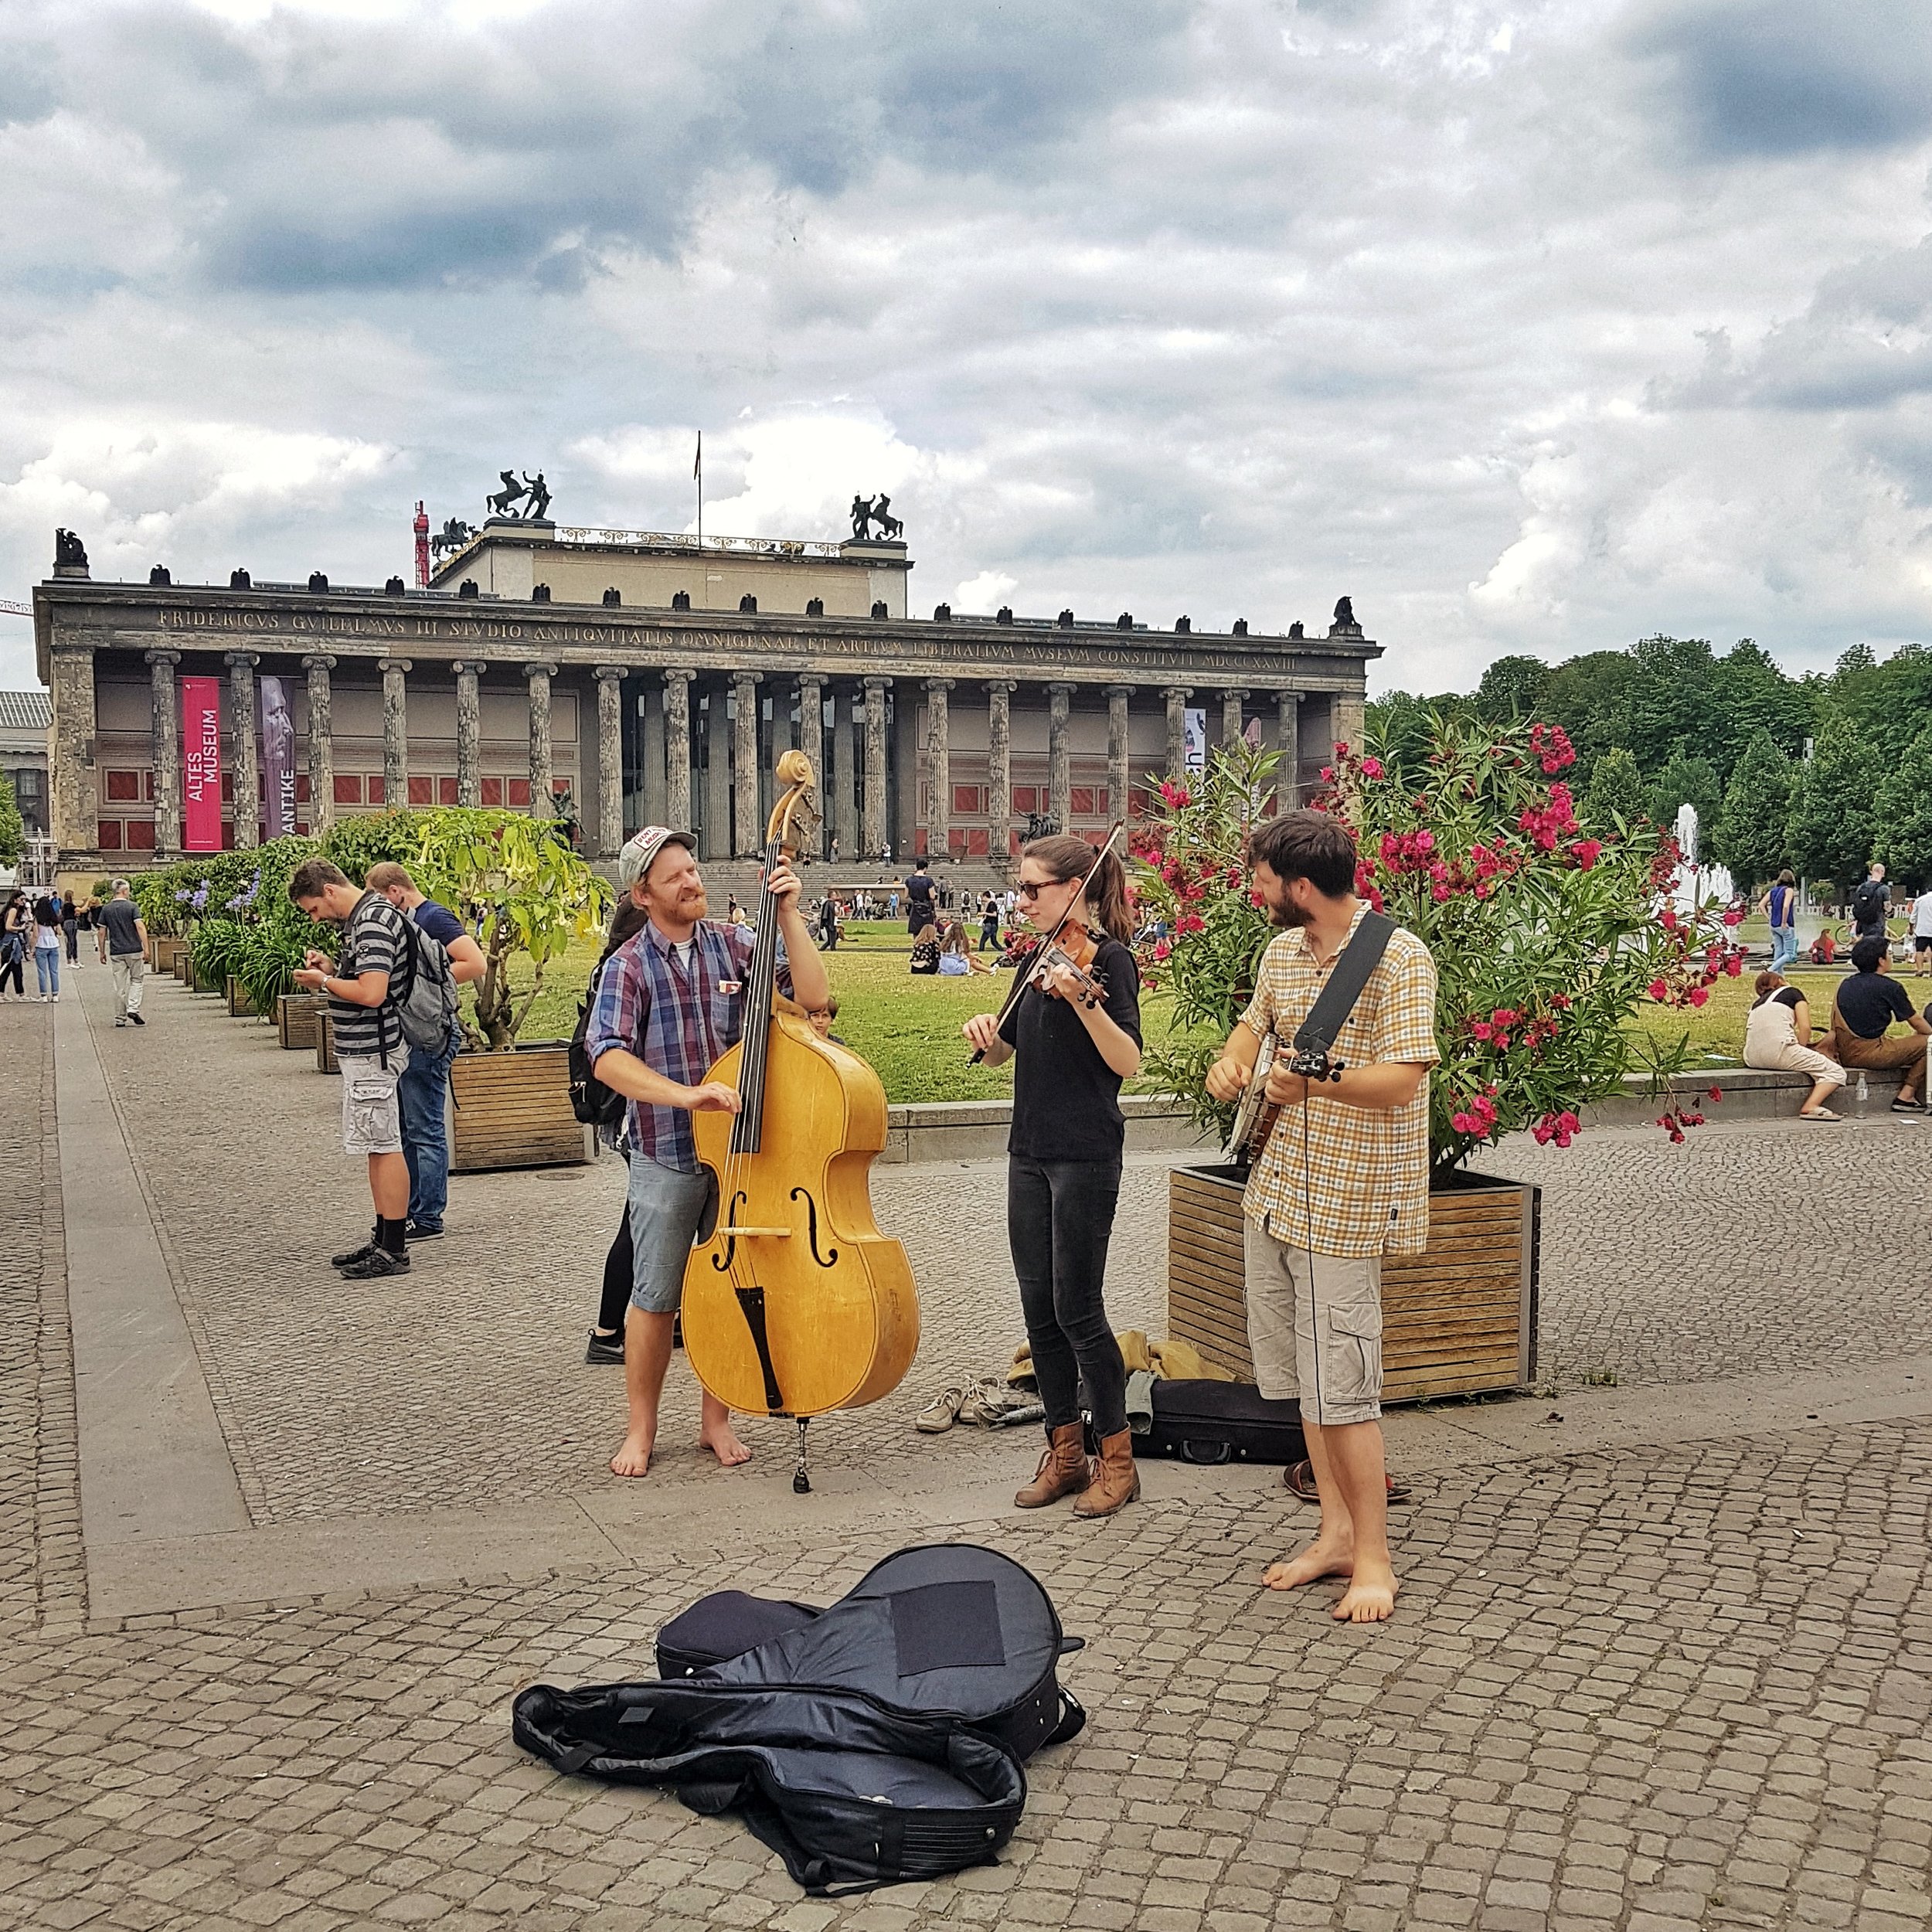 Day 174 - June 23: Buskers in Berlin